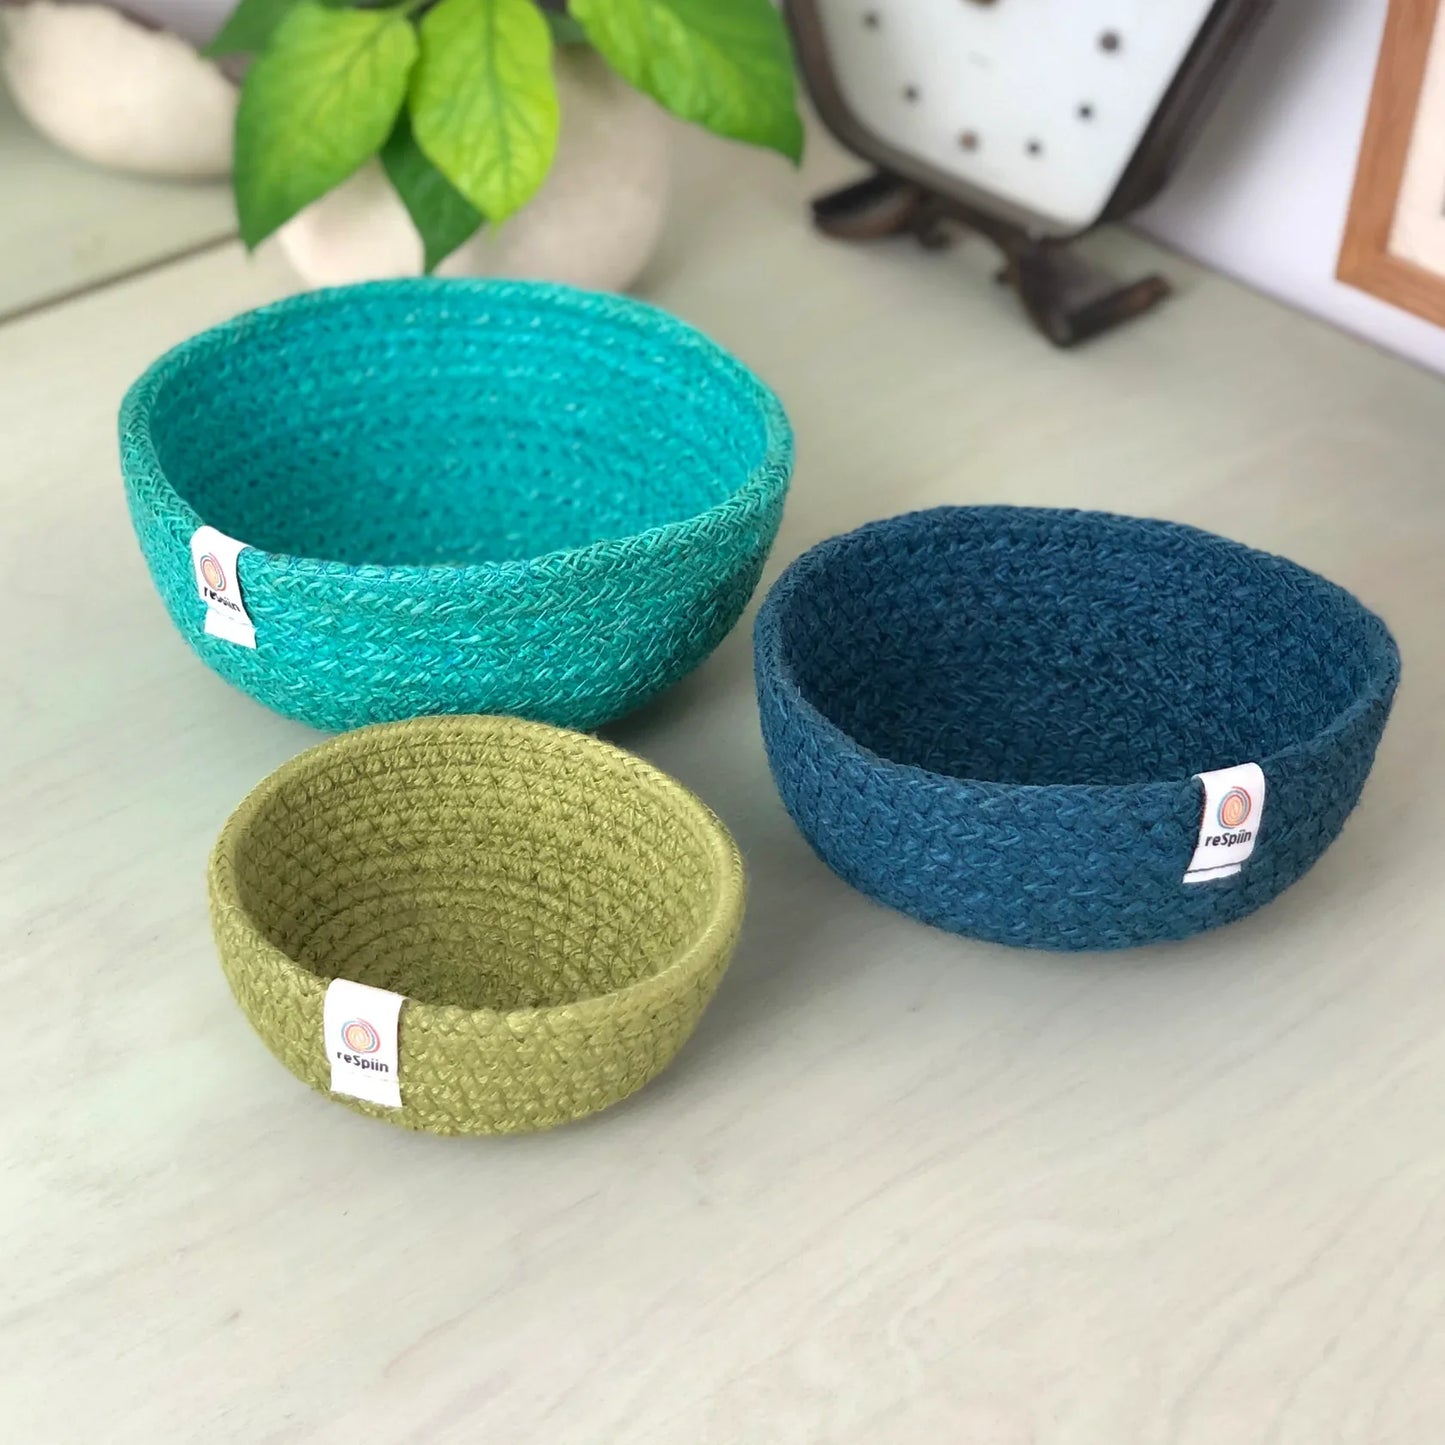 Set of 3 jute baskets in ocean colors